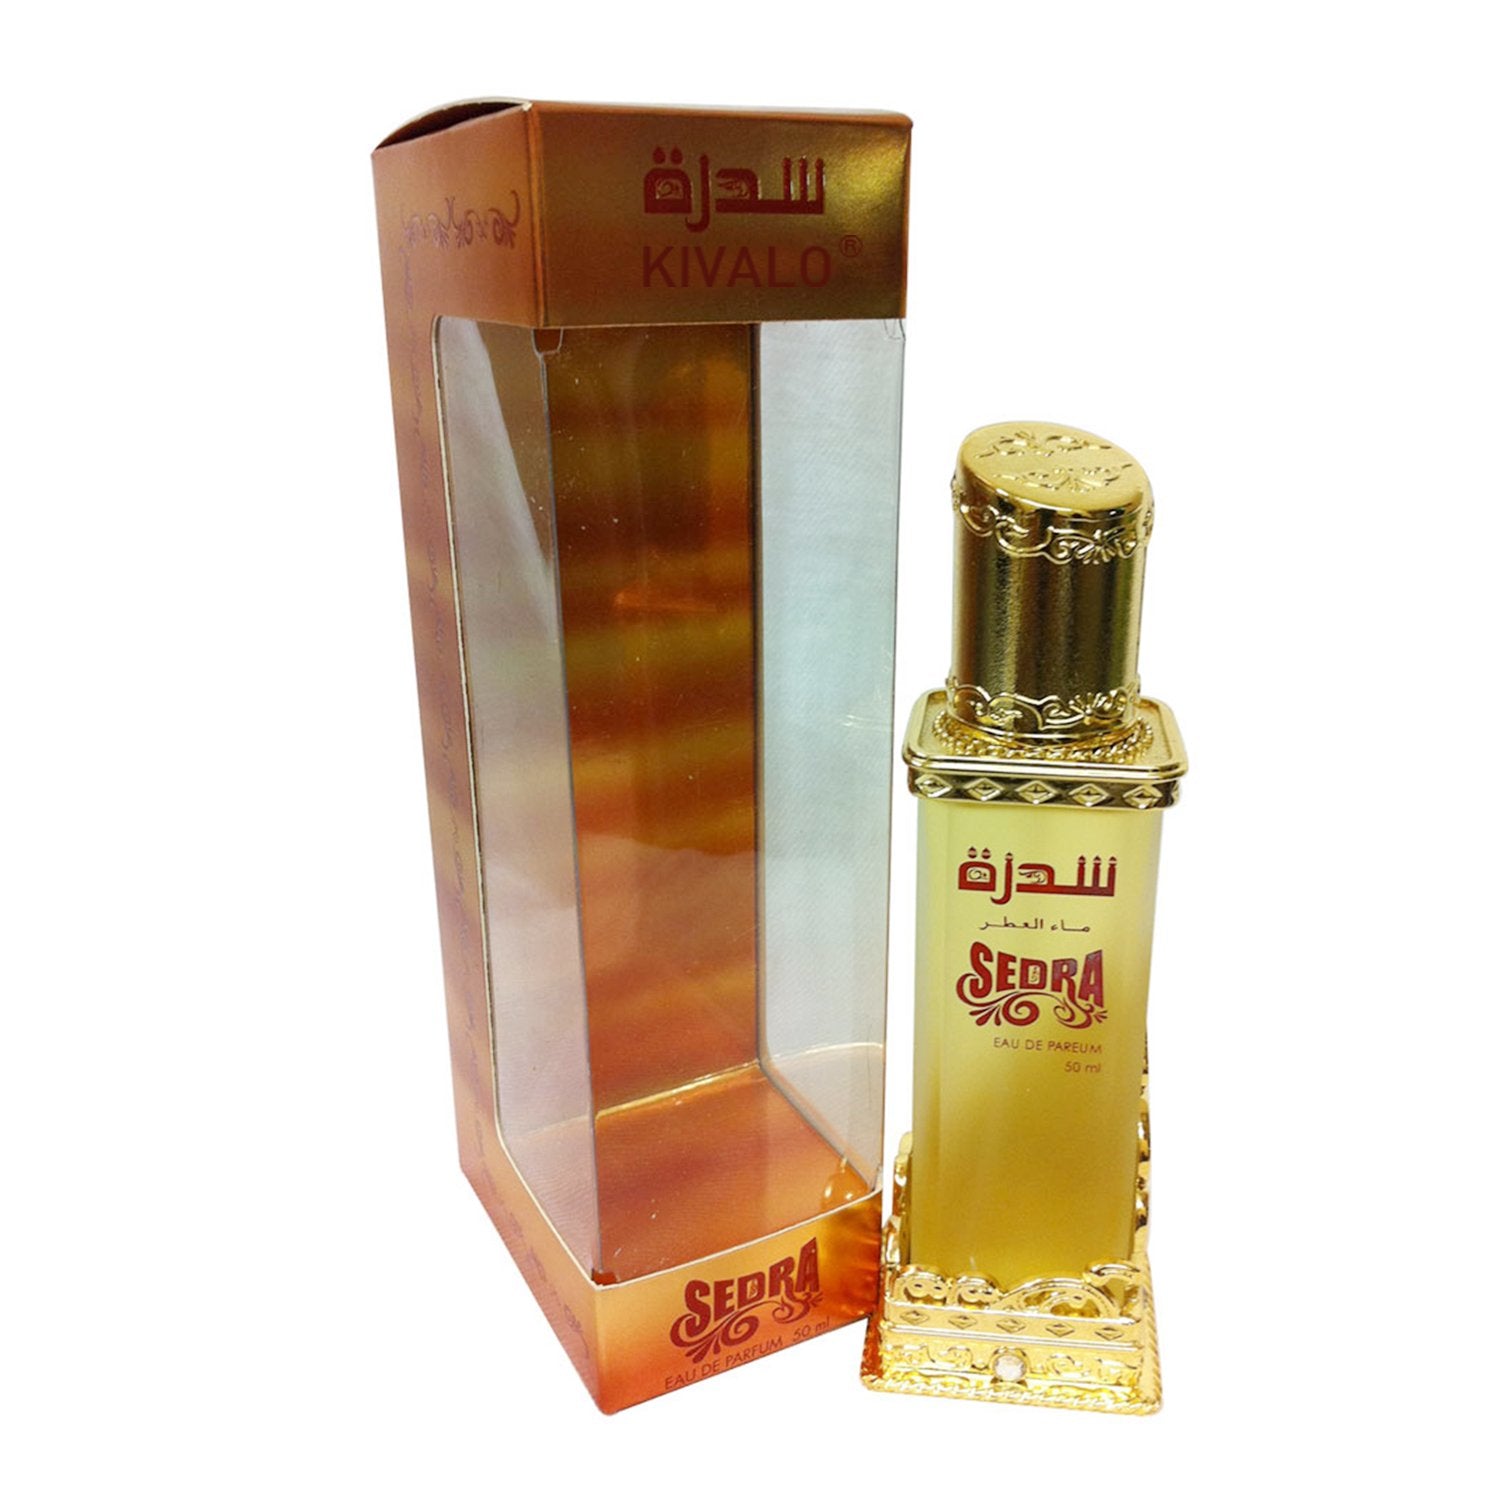 Al Haramain Sedra Perfume Spray - 50 ml